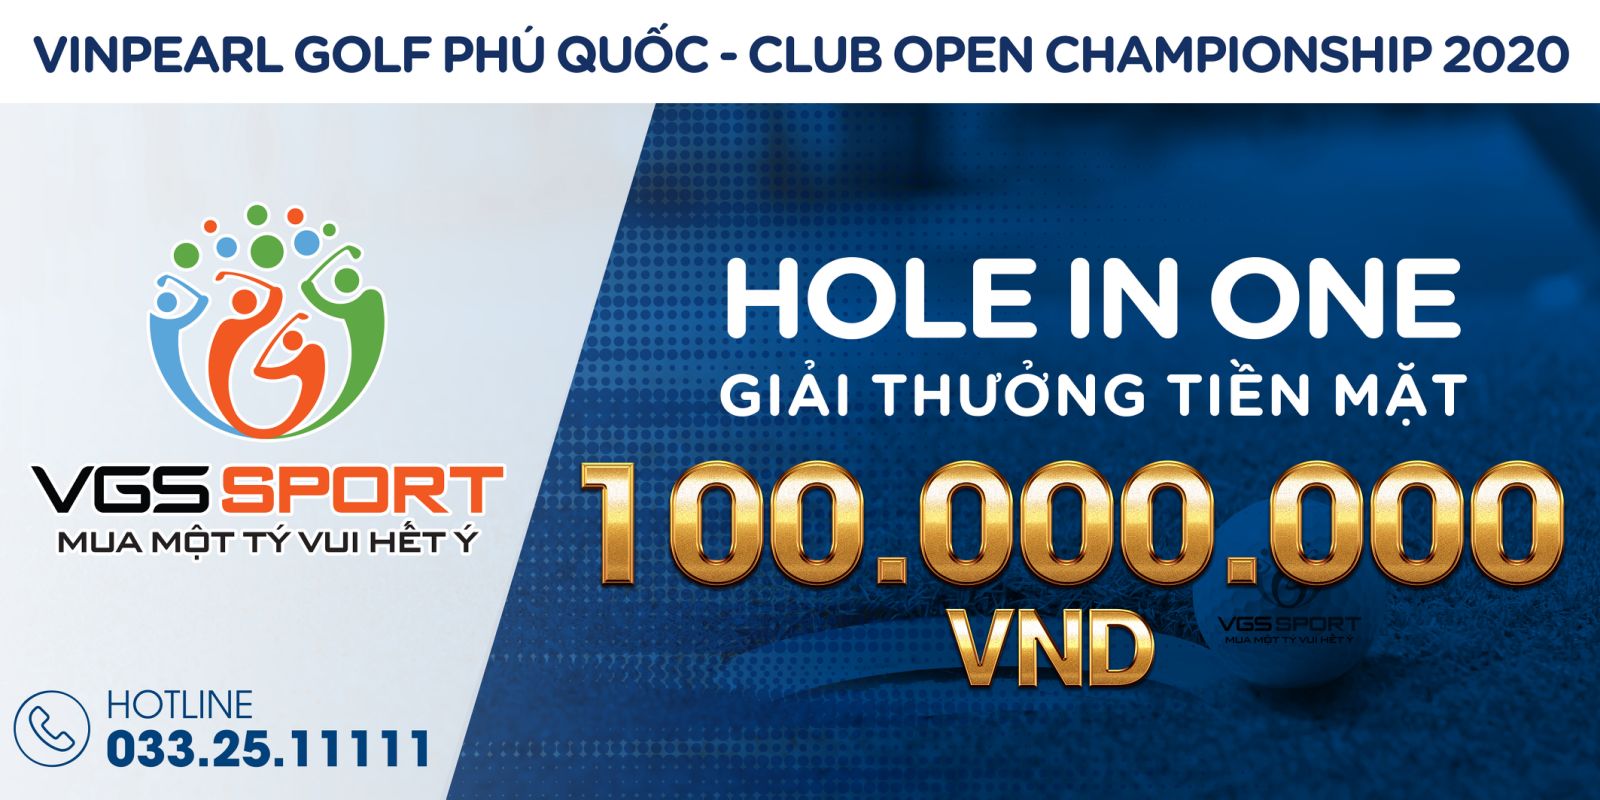 VGS Sport đồng hành cùng giải Vinpearl Golf Phu Quoc Club Open Championship 2020